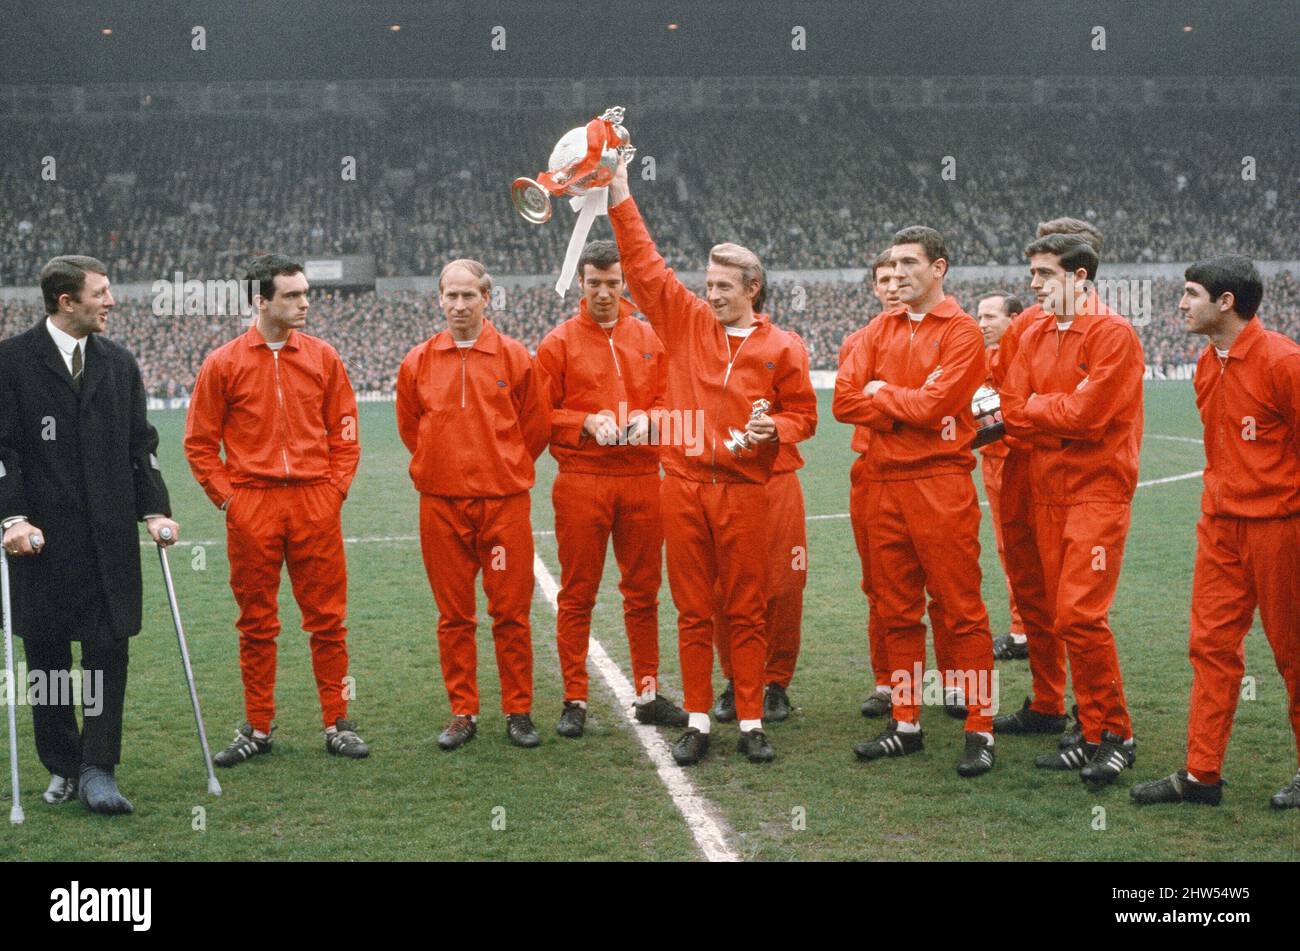 La stagione 1966-67 è stata la stagione 65th del Manchester United nella Football League, e la loro stagione 22nd consecutiva nella top divisione del calcio inglese. Hanno finito la stagione come campioni di campionato per la settima volta nella loro storia e il quinto sotto la gestione di Matt Busby, ma questo sarebbe il loro ultimo titolo di divisione superiore per 26 anni.(Picture shows) Dennis legge tenendo il trofeo aloft con i compagni di squadra. 13th maggio 1967 Foto Stock